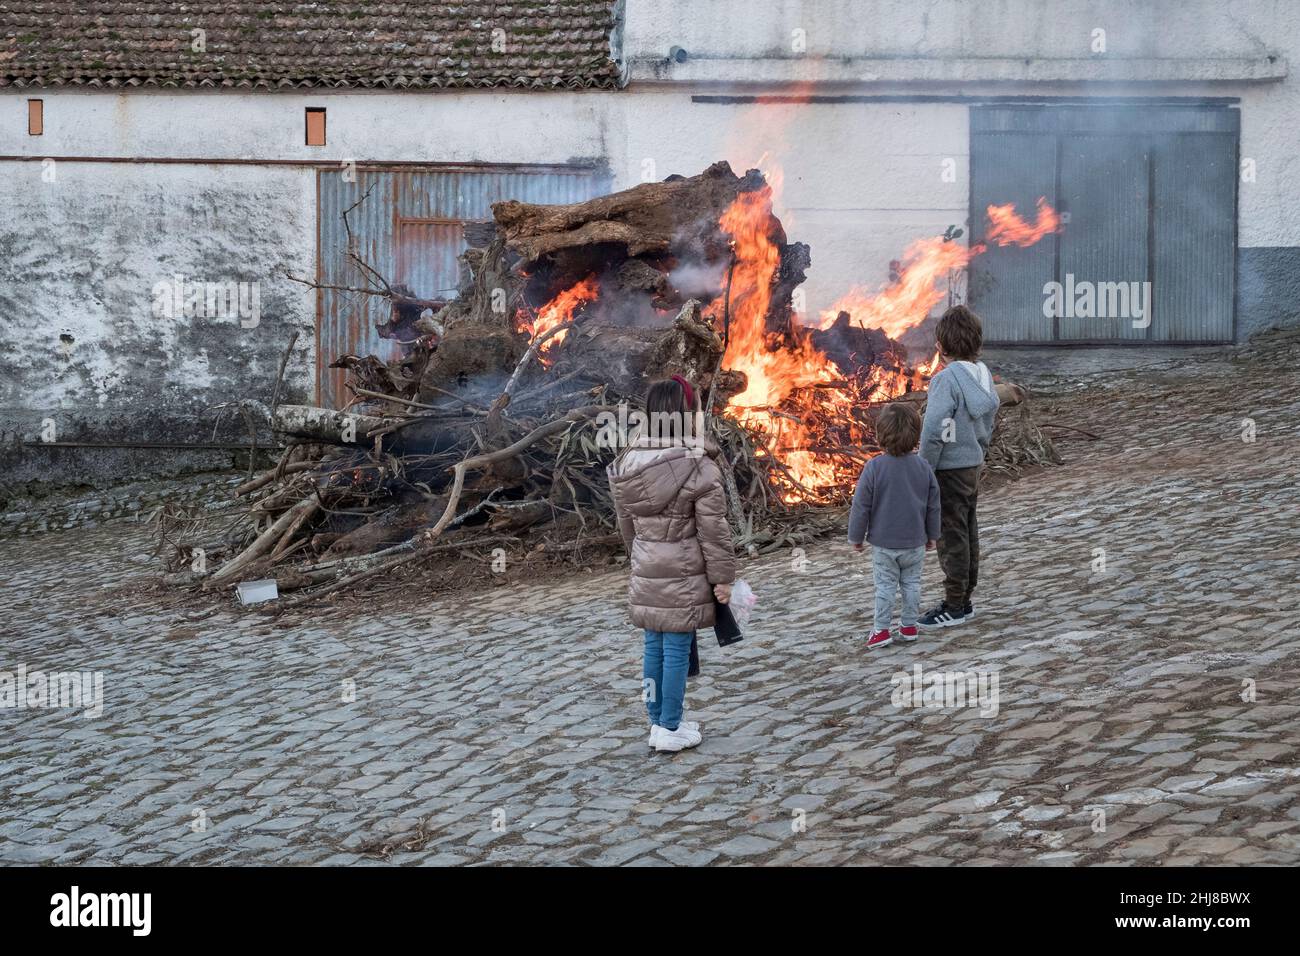 Kinder in einem portugiesischen Dorf beobachten das traditionelle Weihnachtsfeuer oder Madeiro, das in der Woche vor Weihnachten angezündet und verbrannt wird Stockfoto